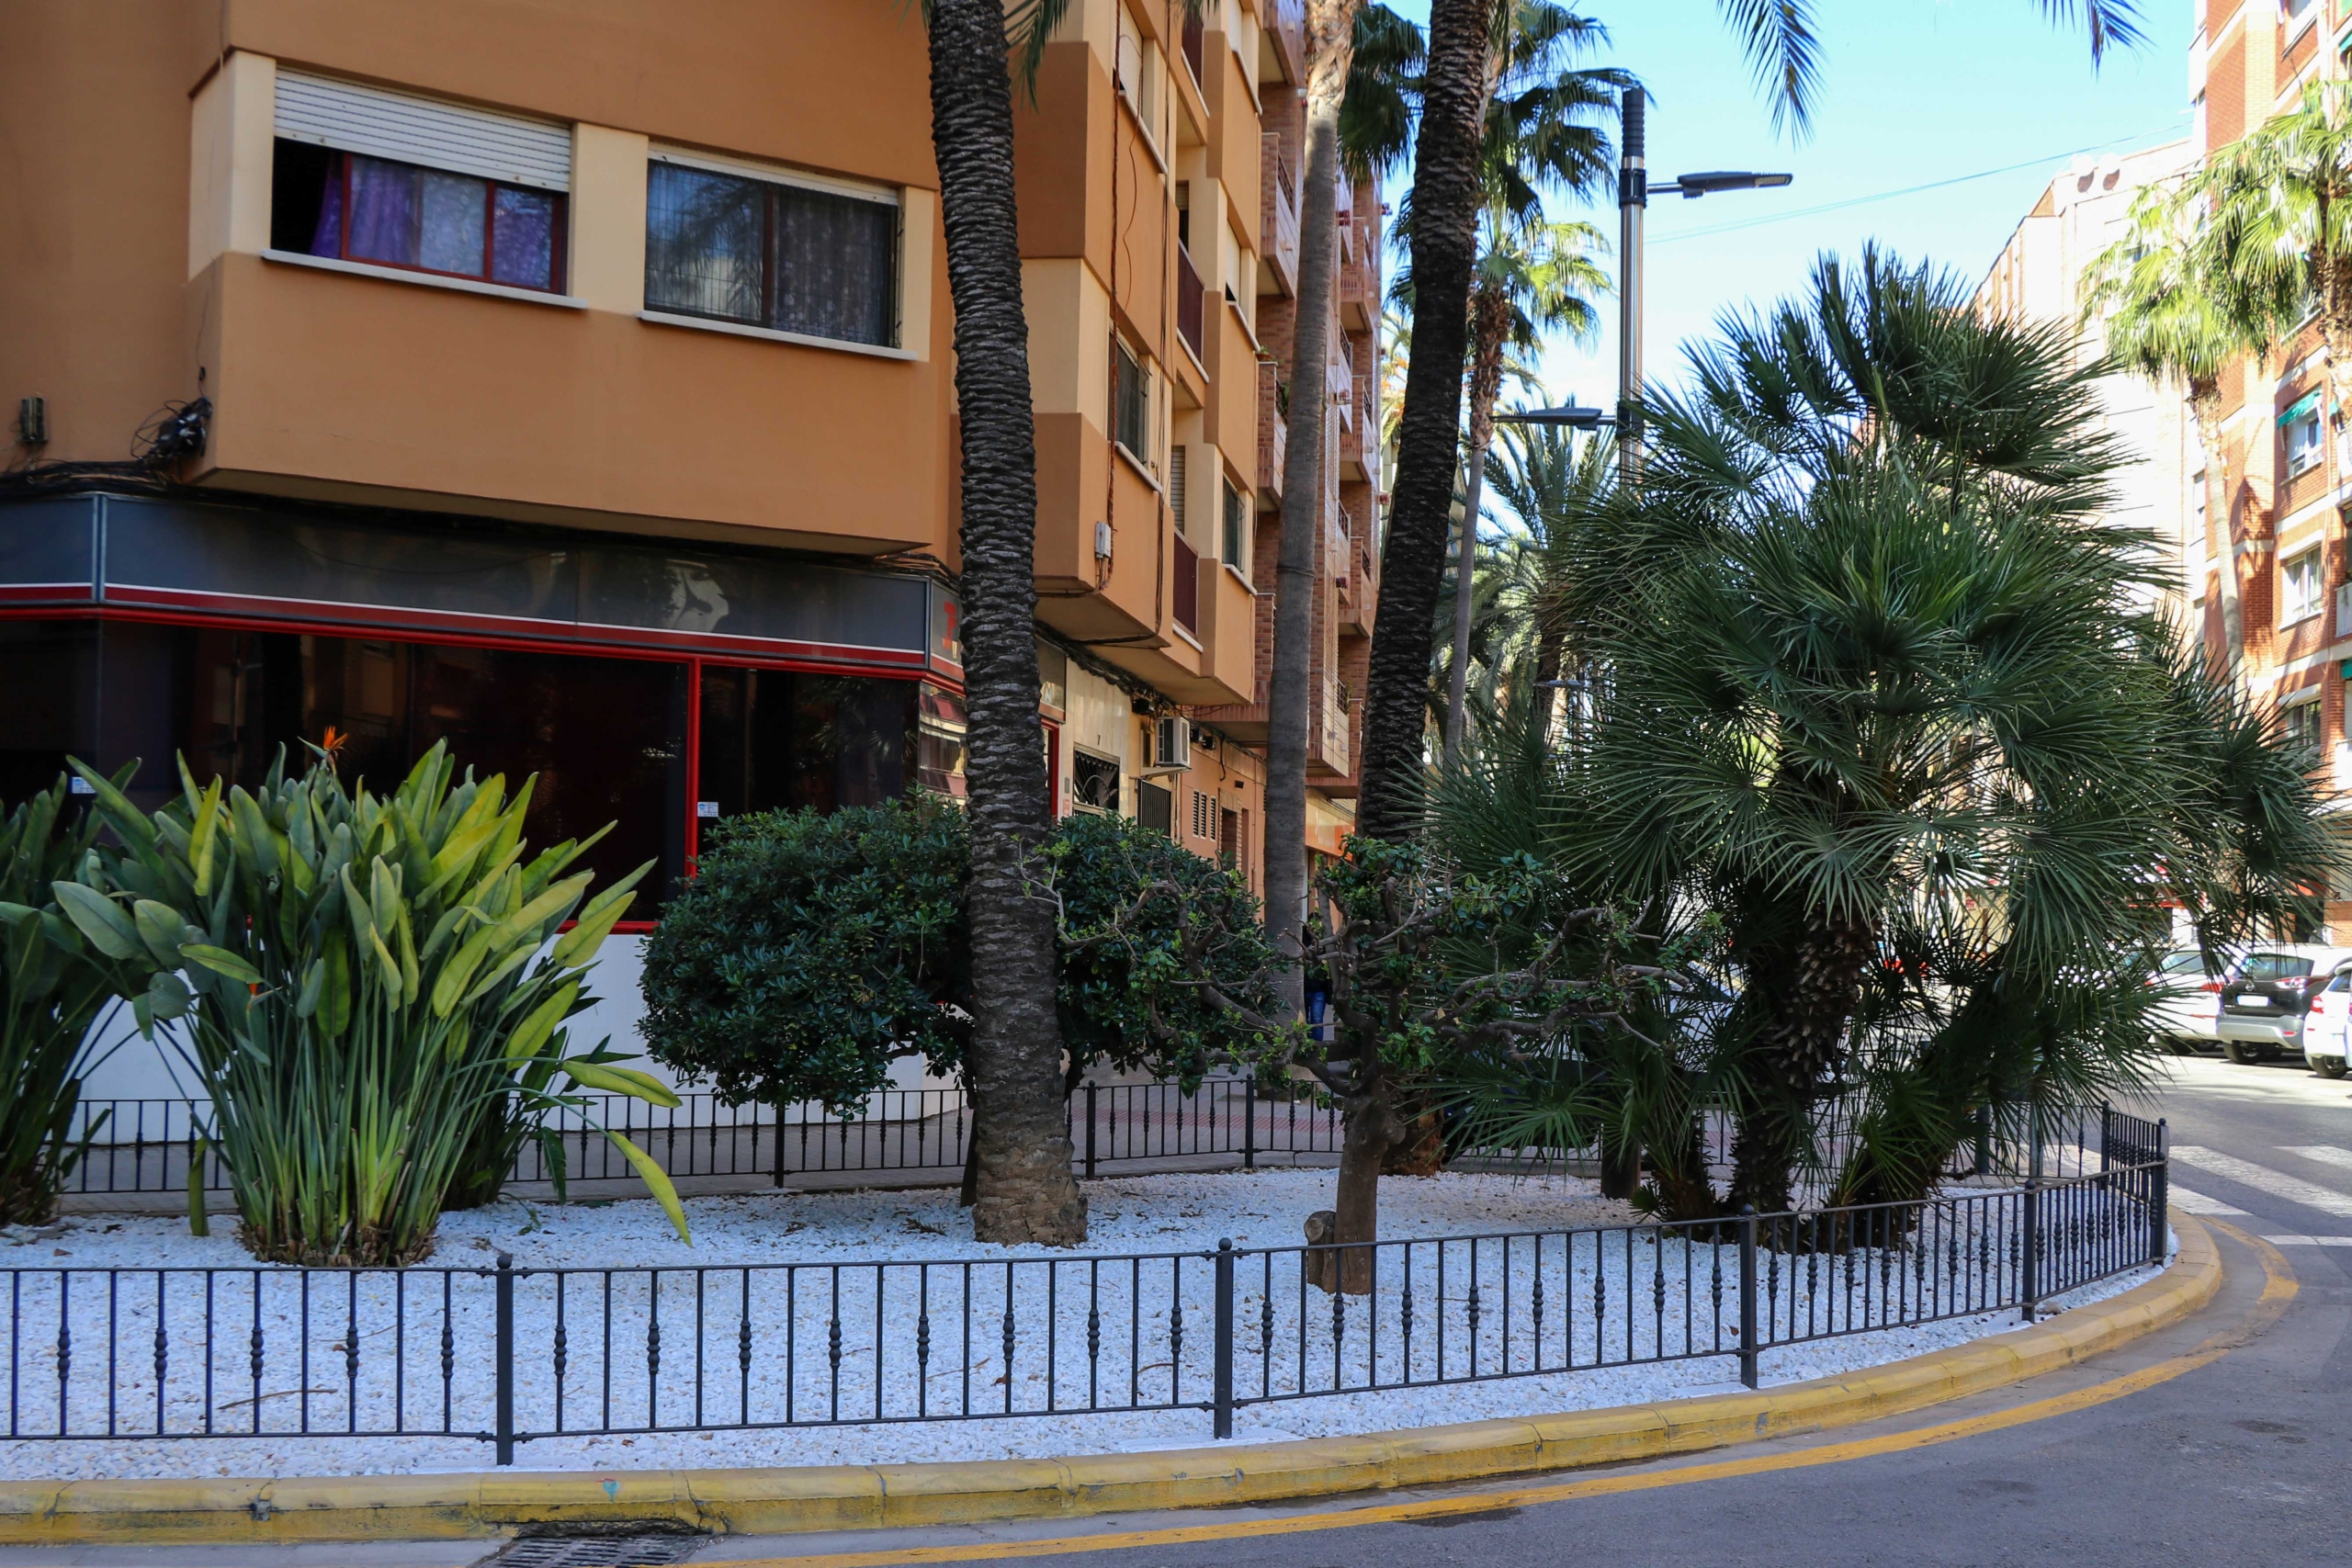 L’Ajuntament de Torrent redissenya les zones enjardinades del carrer de Sant Valerià